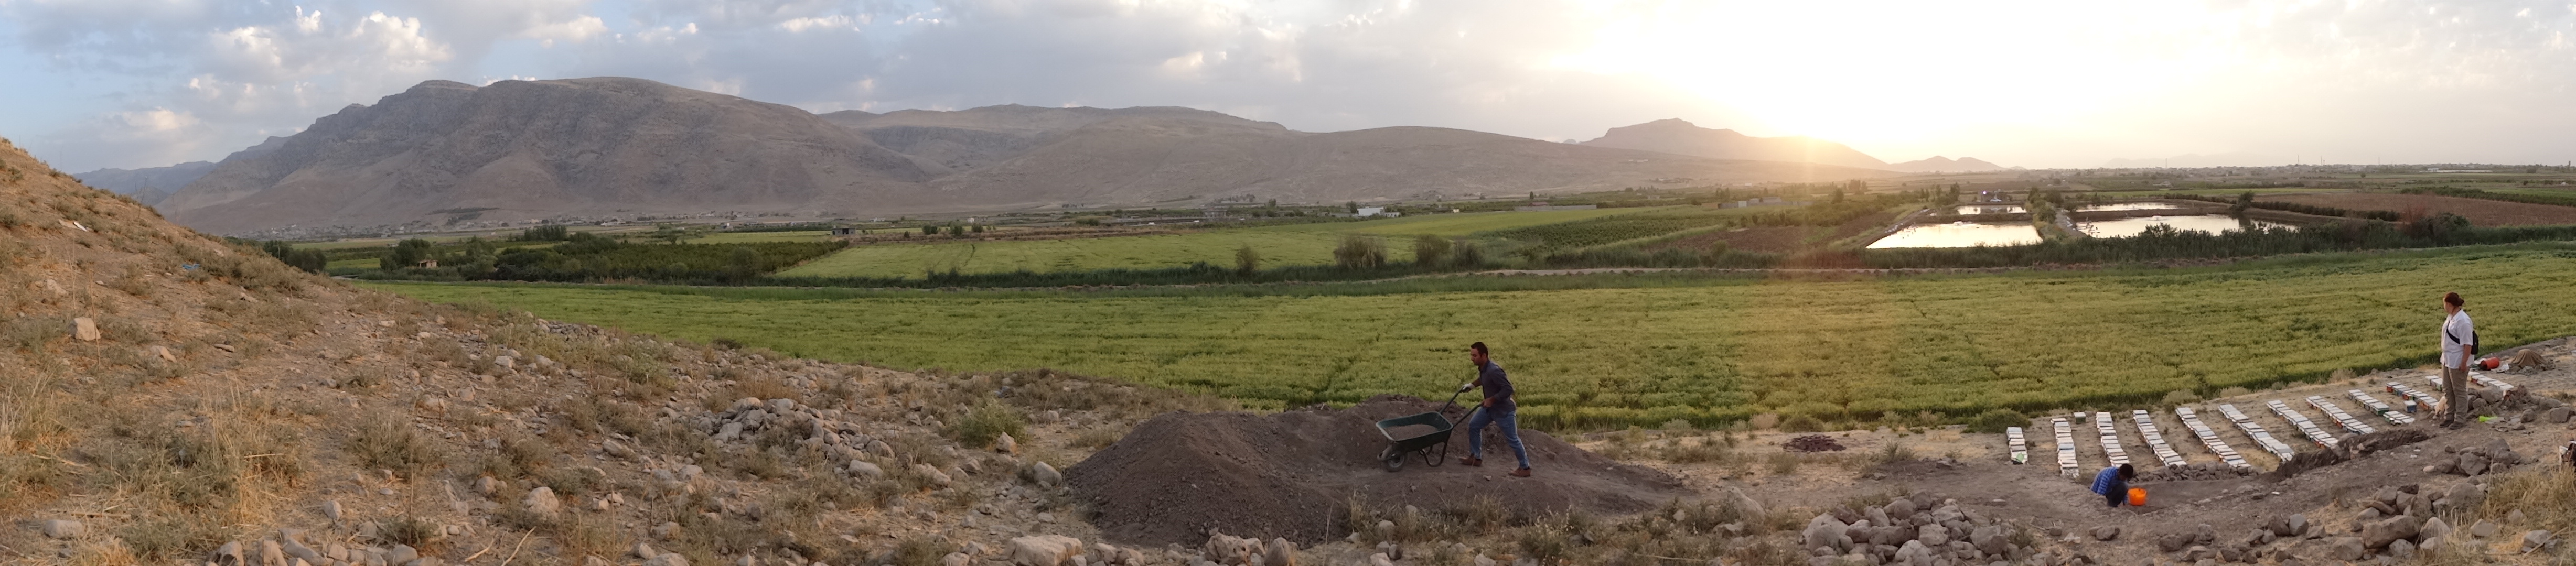 Szenzáció - Újasszír települést találtak magyar kutatók Kurdisztánban